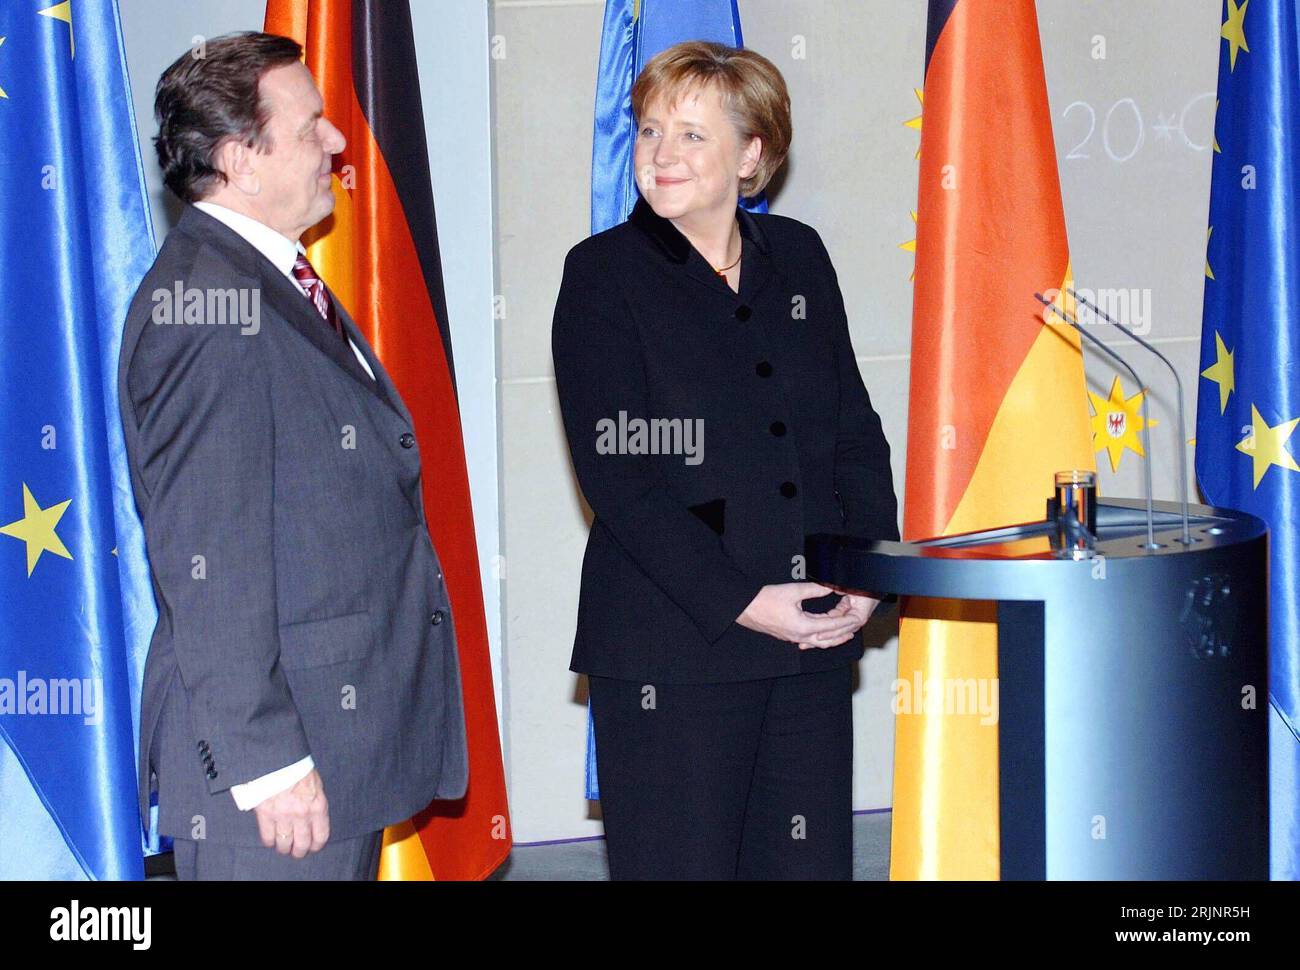 Bundeskanzlerin Angela Merkel RE., GER/CDU und ehemaliger Bundeskanzler Gerhard Schröder GER/SPD Lächeln sich zufrieden an anlässlich der Kanzleramtsübergabe in Berlin - PUBLICATIONxNOTxINxCHN Banque D'Images